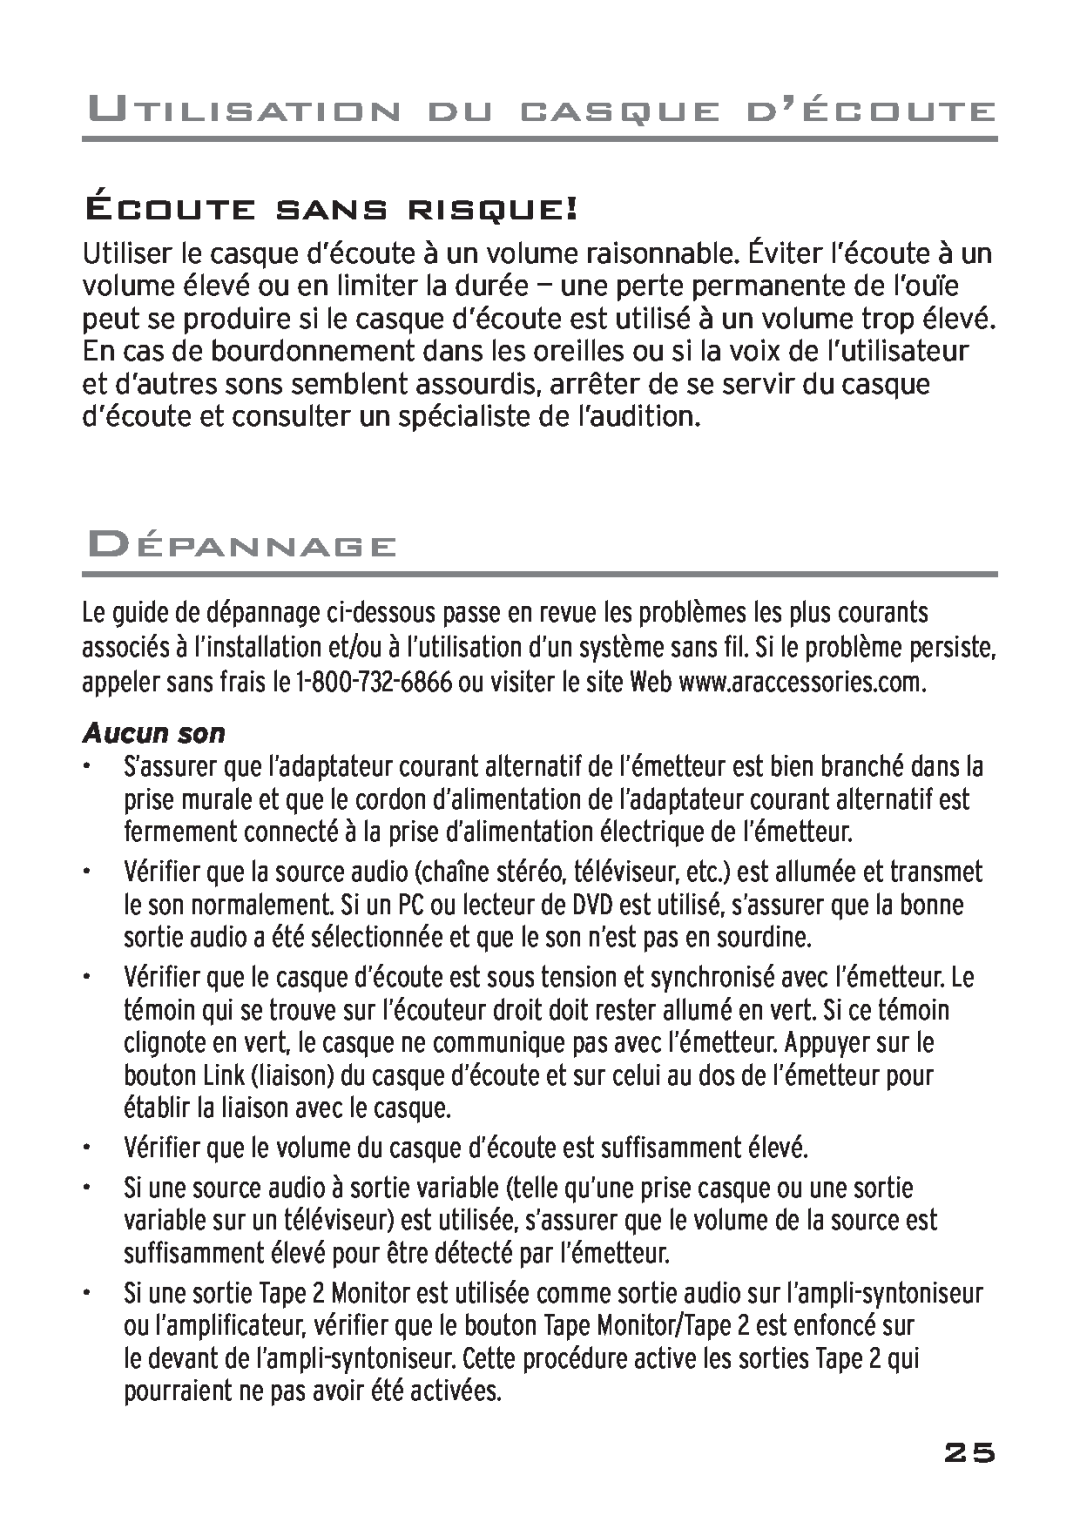 Acoustic Research AWD205 owner manual Écoute Sans Risque, Dépannage, Aucun son, Utilisation Du Casque D’Écoute 